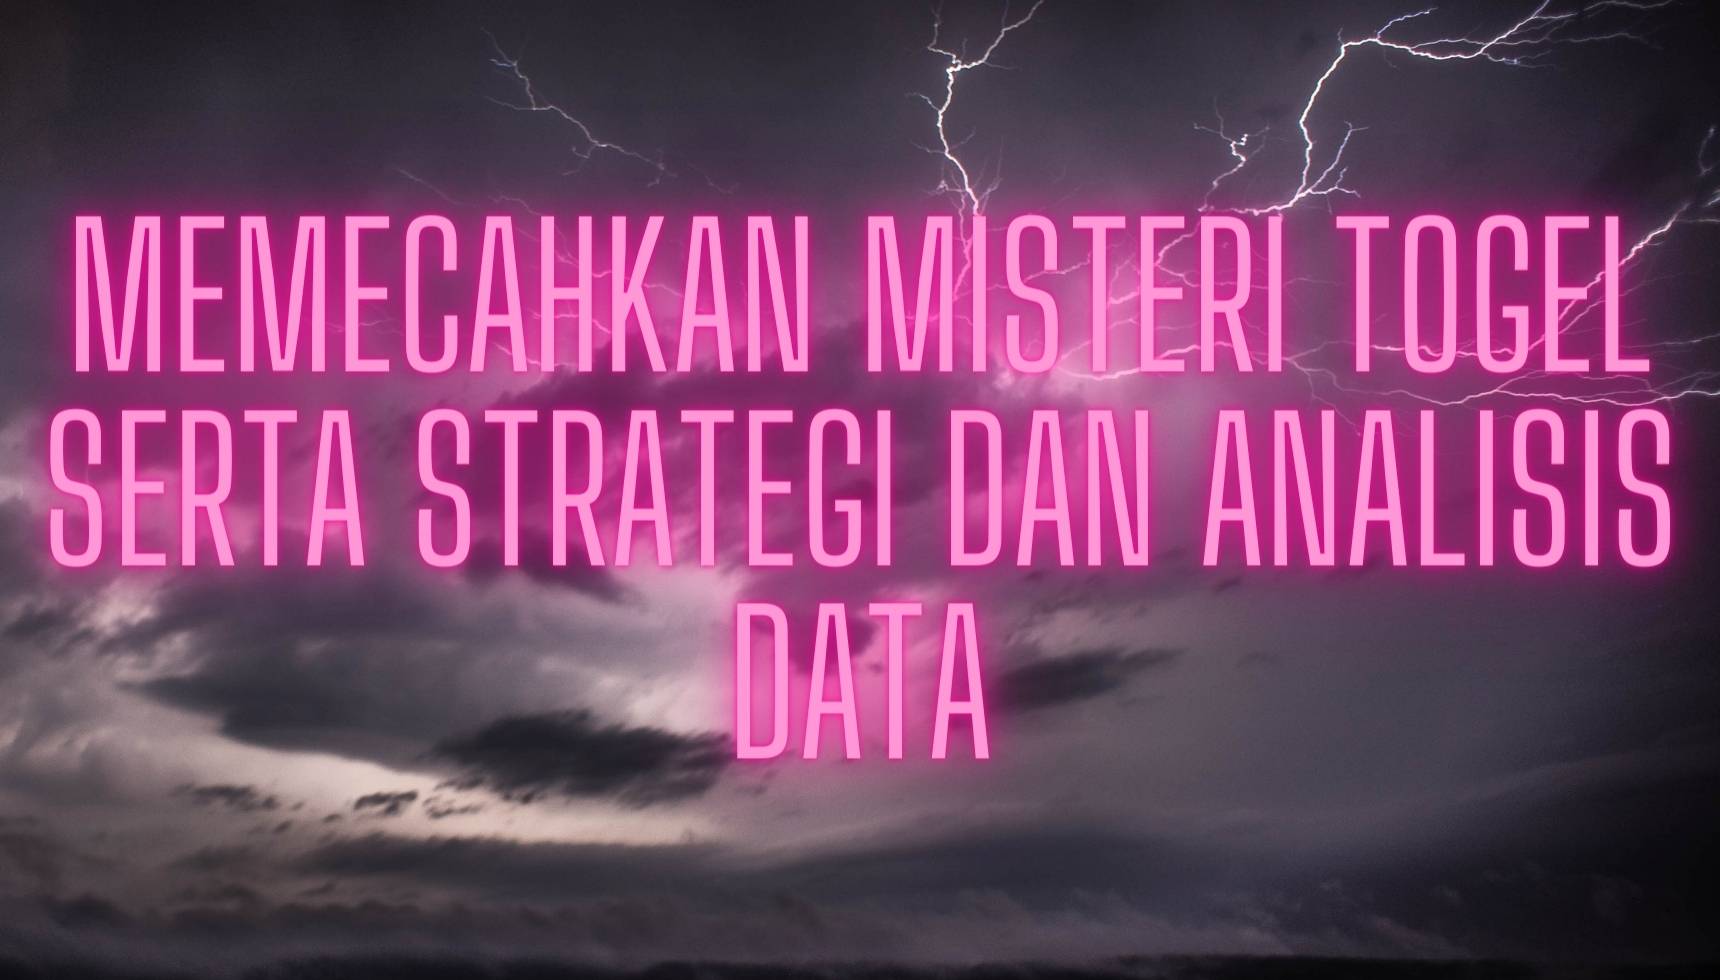 Memecahkan Misteri Togel serta Strategi dan Analisis Data